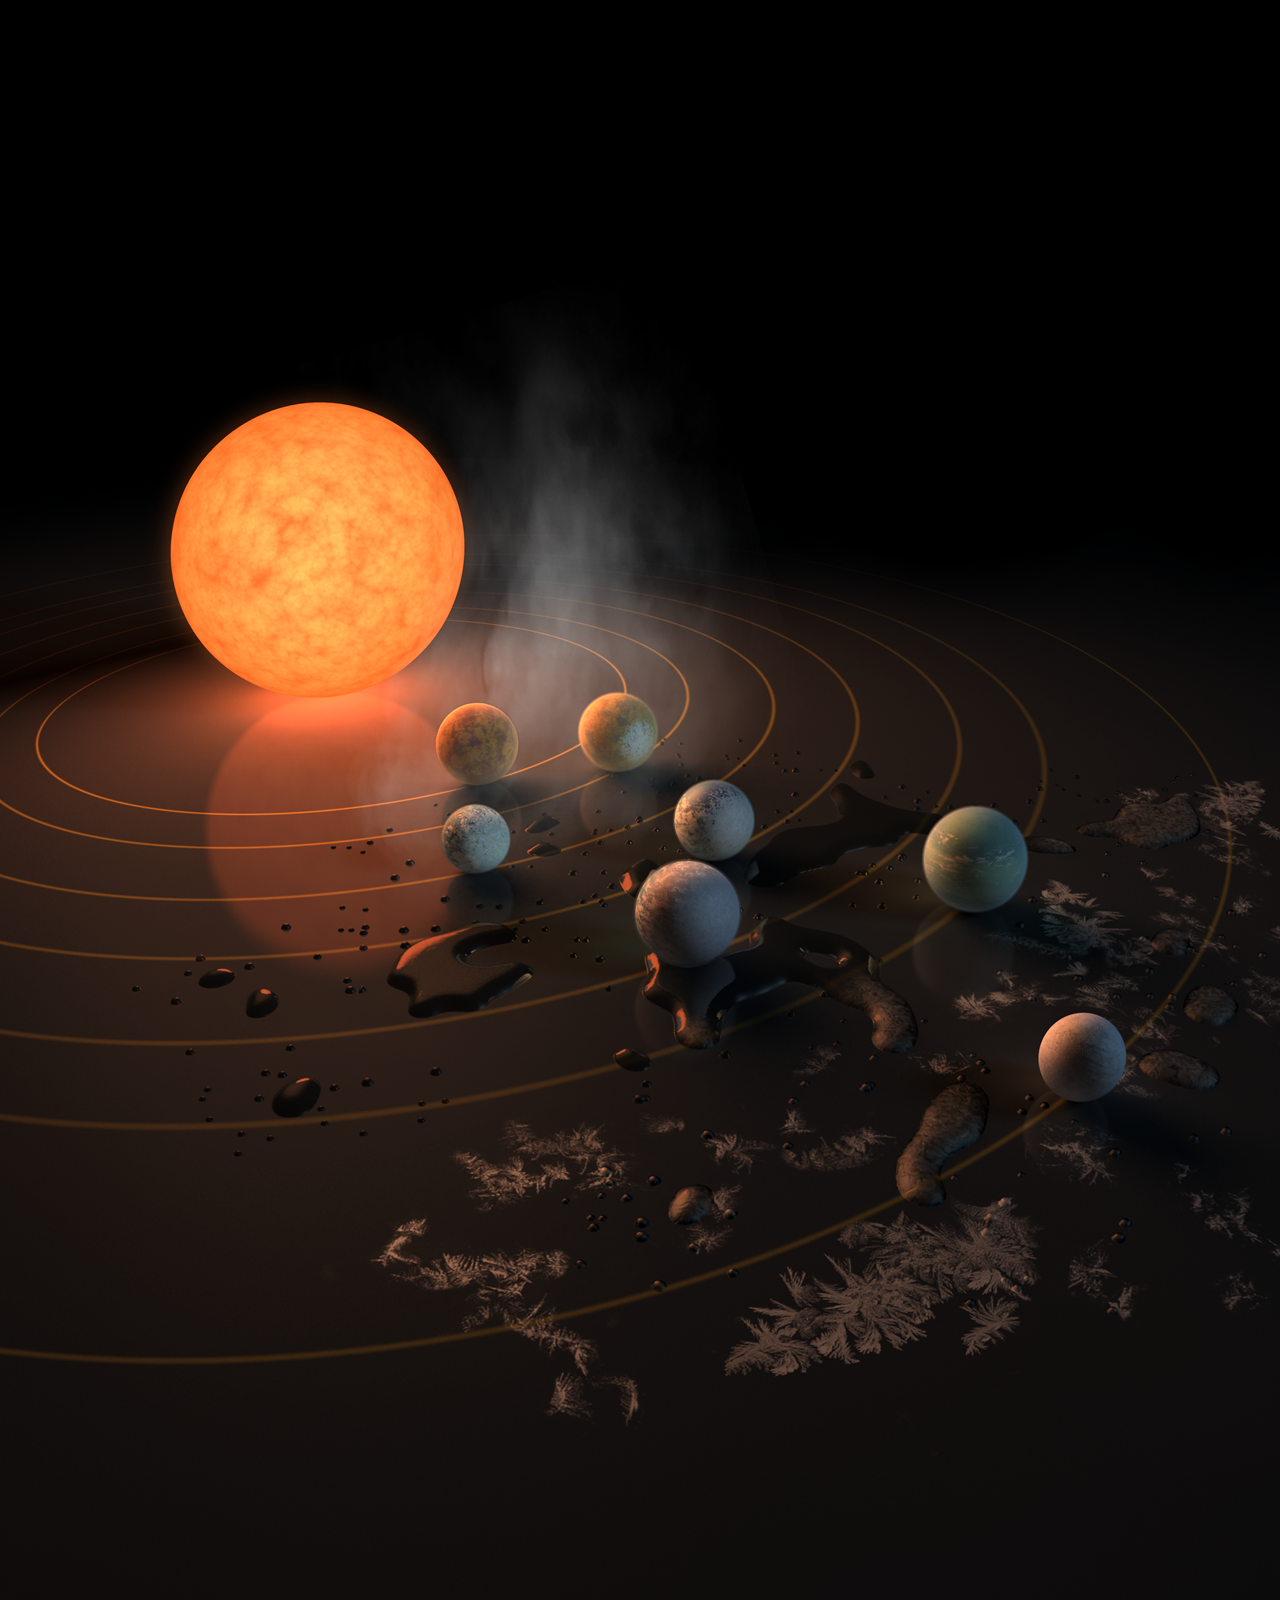 Un analogue compact de notre système solaire : Découverte de 7 planètes de la taille de la Terre dans le même système